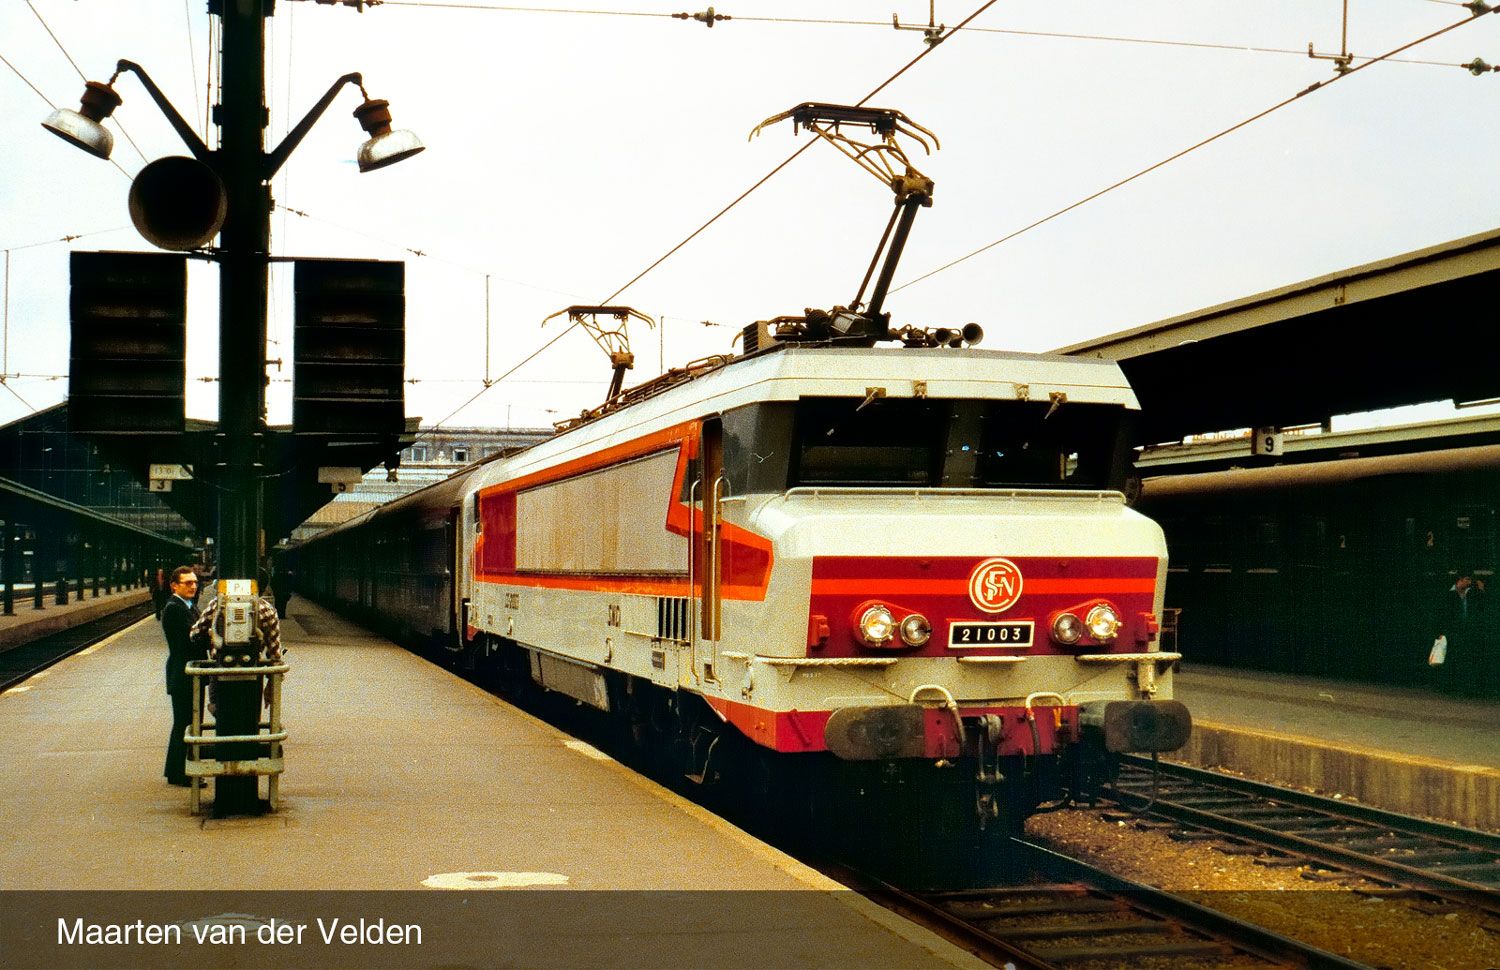 Locomotive électrique CC 21004, livrée argent, époque IV SNCF